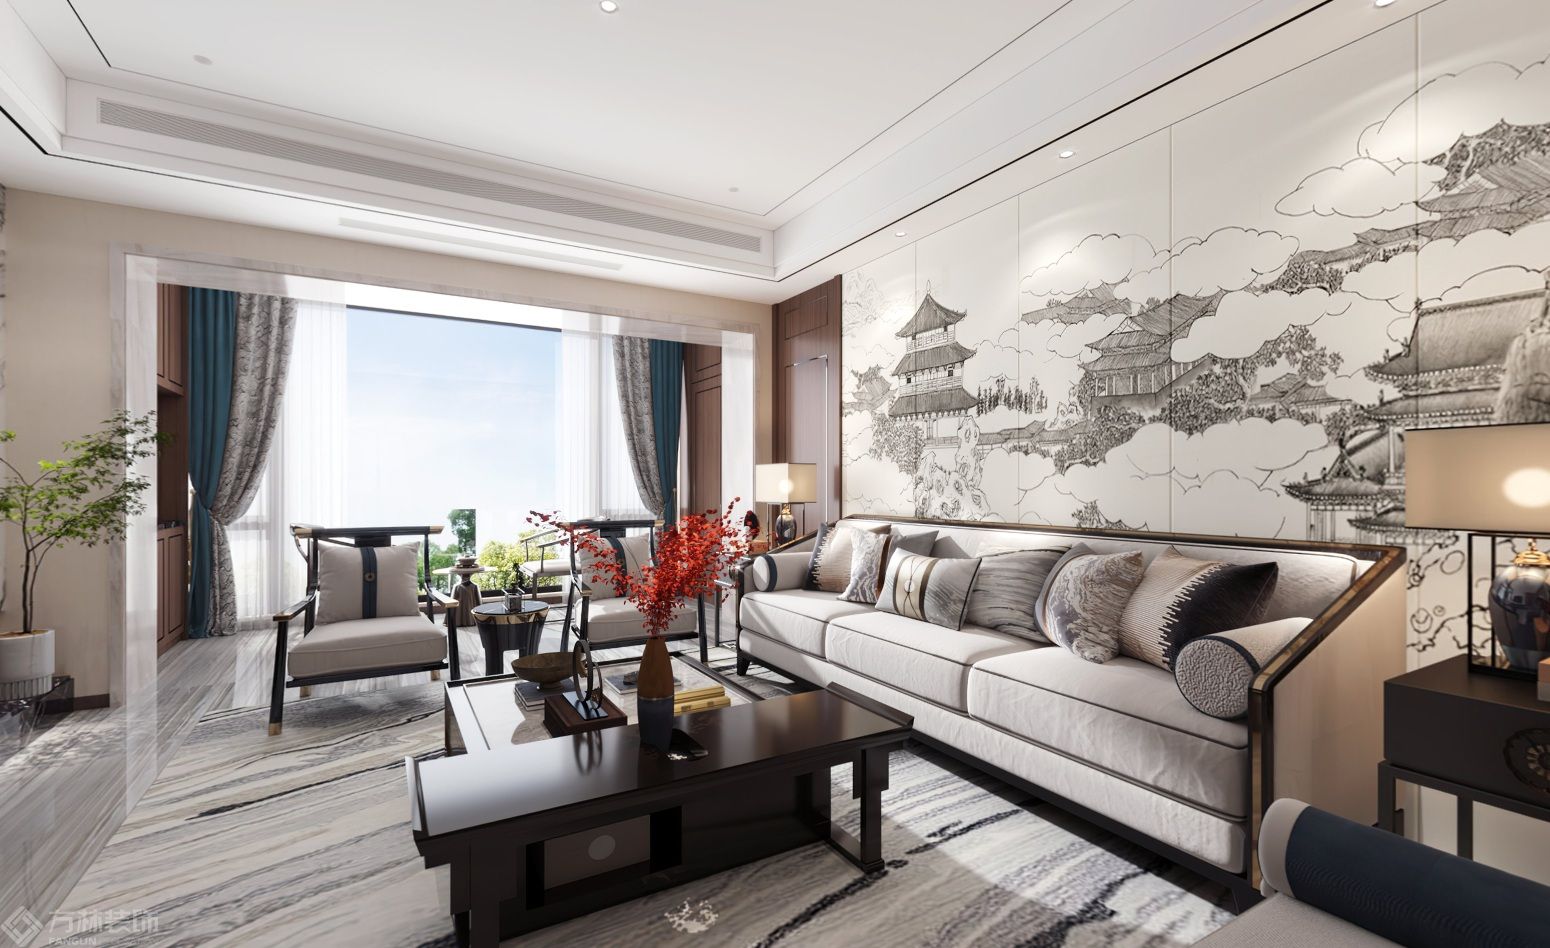 新中式沙发背景采用定制硬包壁画使空间更加的有画面感，更有层次，旁边做隐形门使空间更加的整体化。